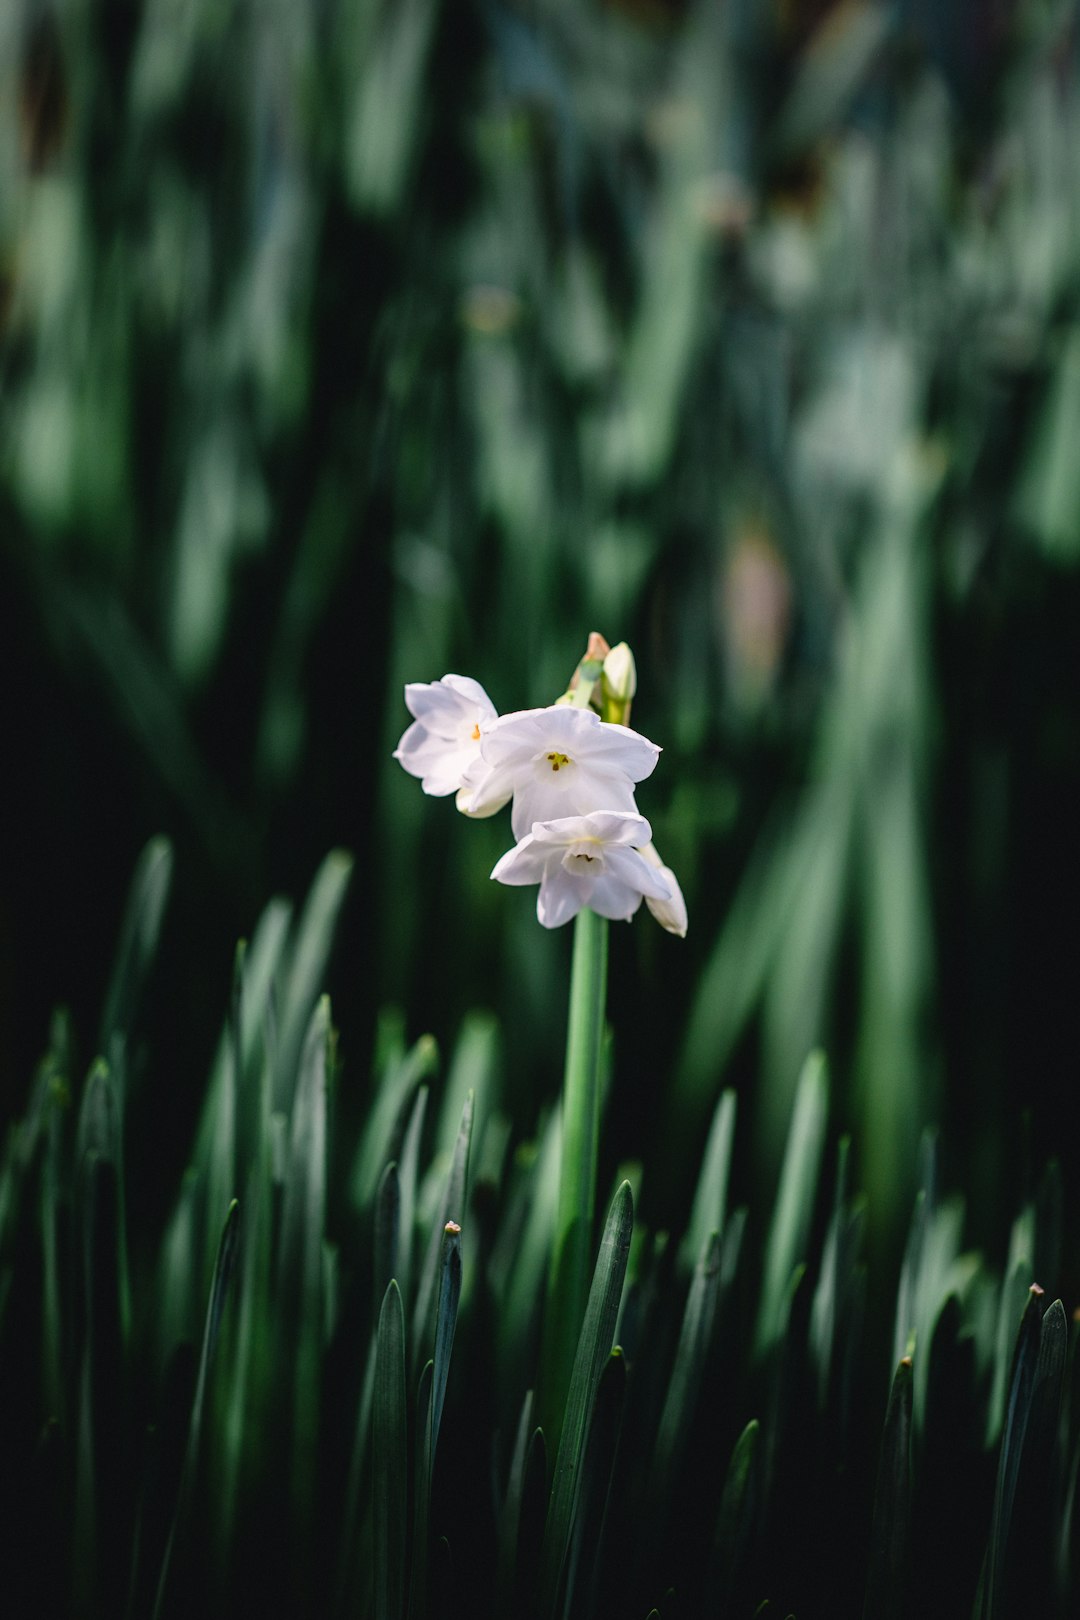 white flowers in tilt-shift lens photography